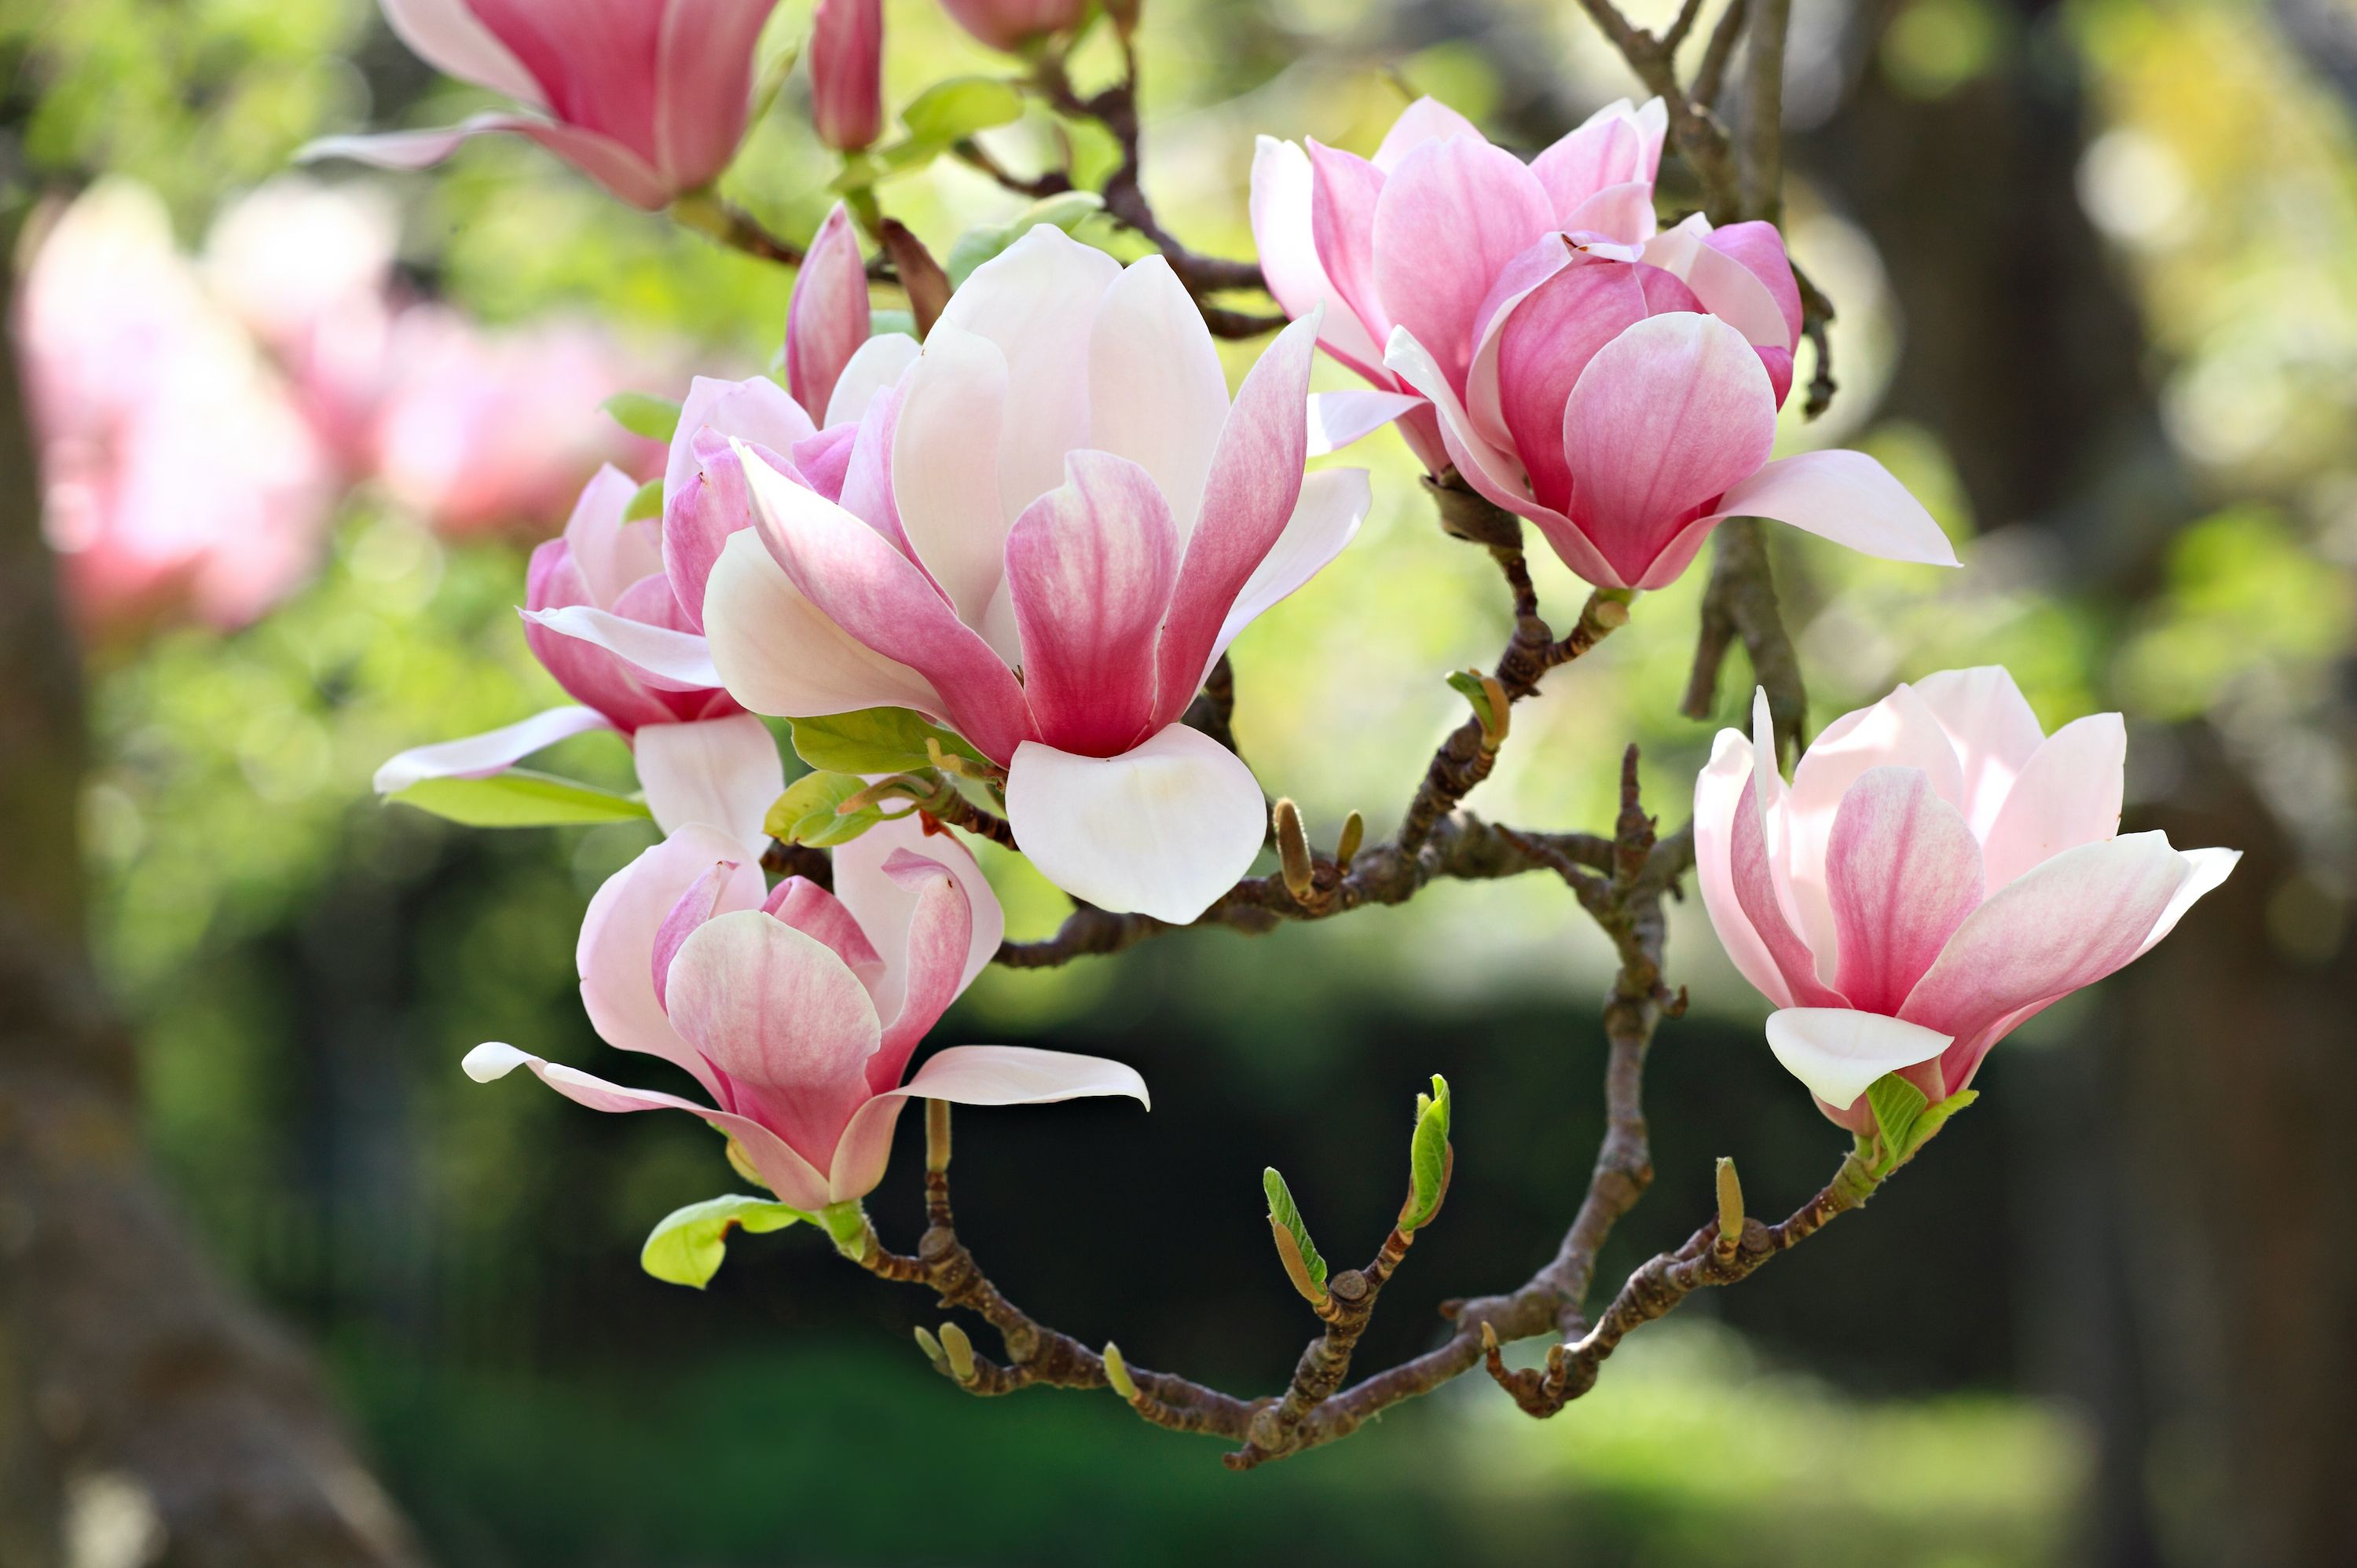 magnoliaträd i blom i trädgården